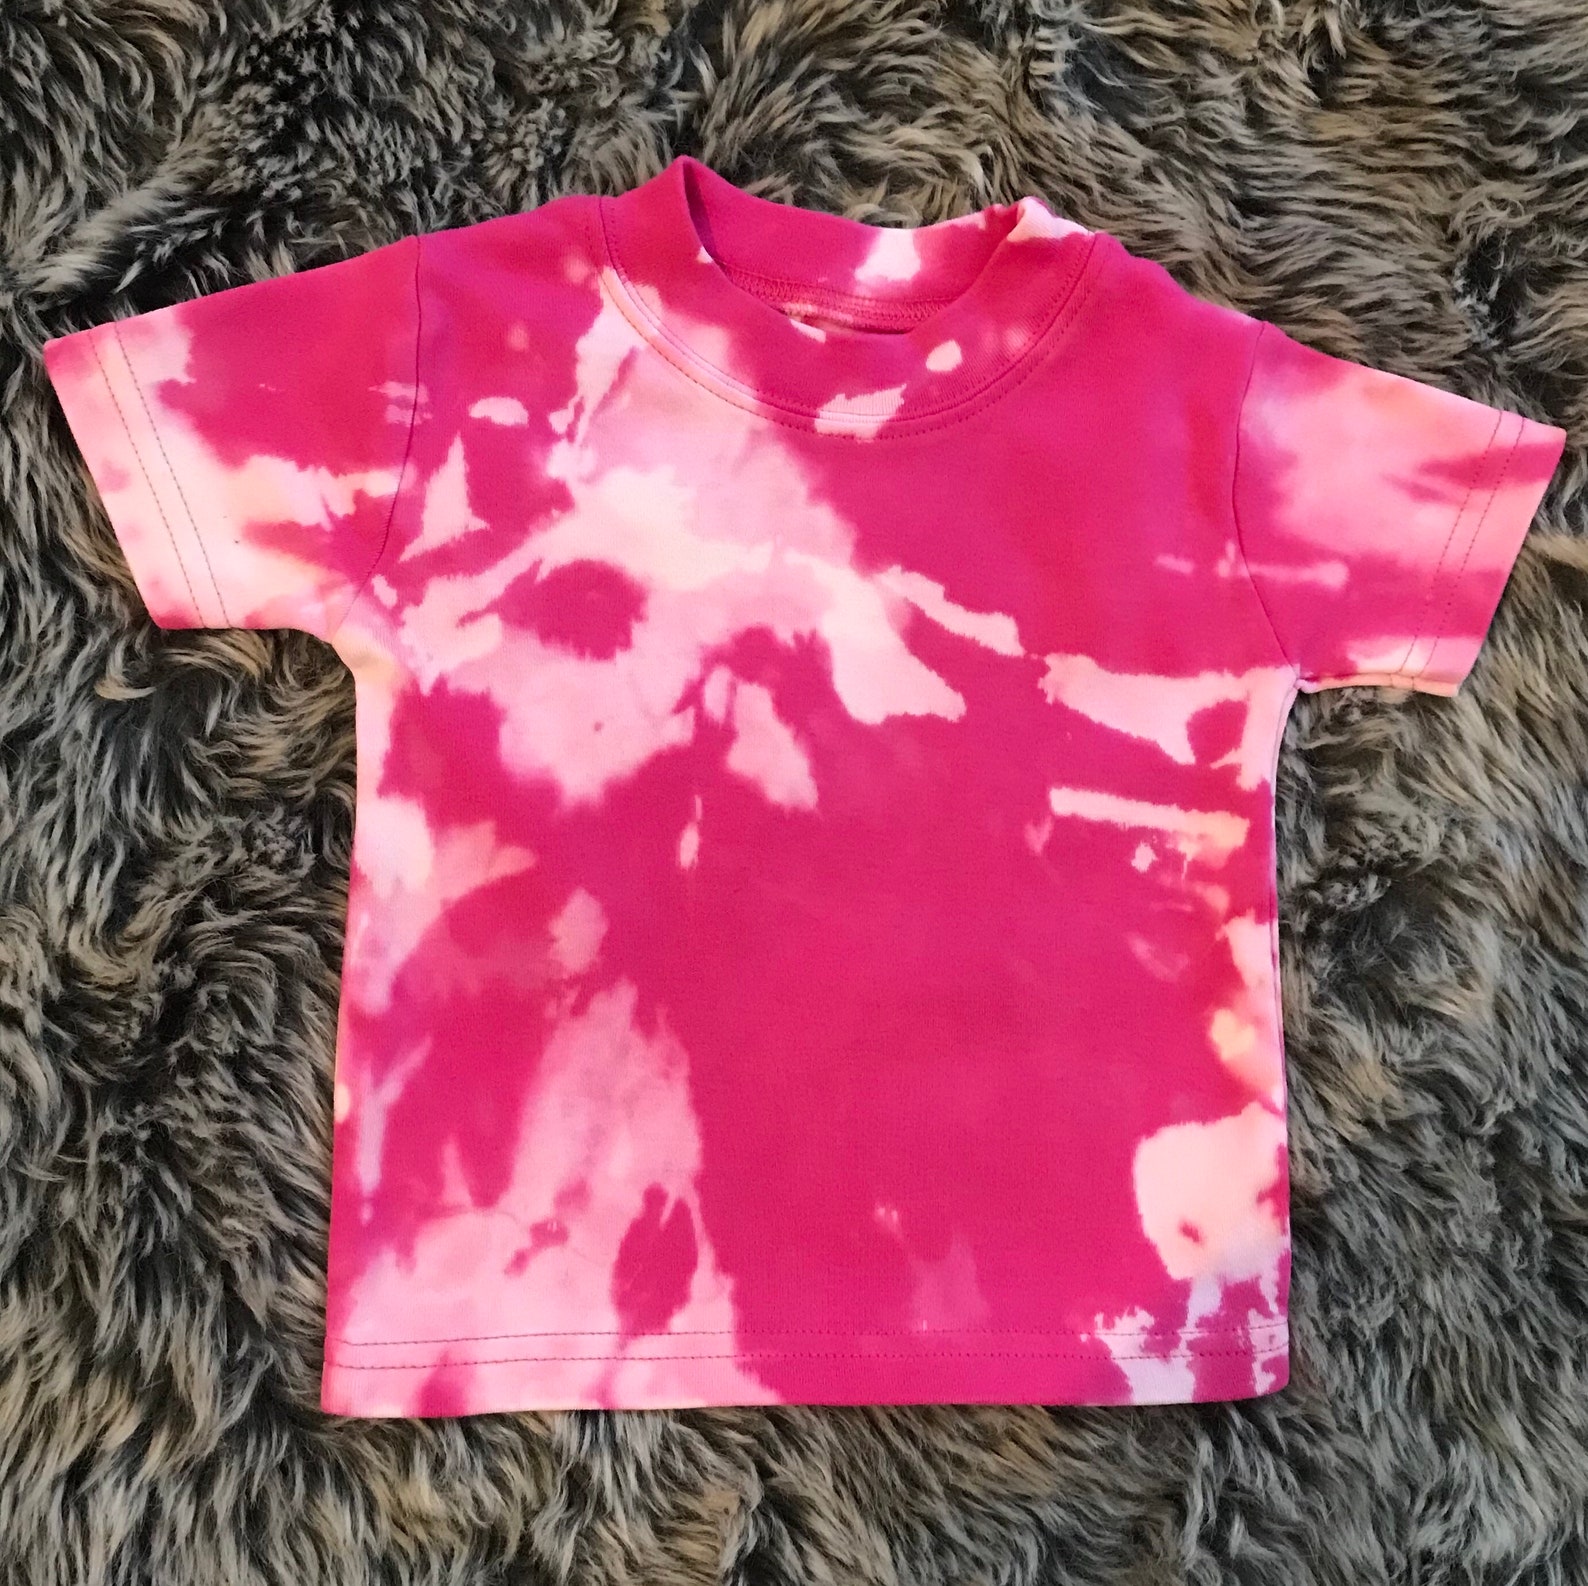 Tie dyed/acid wash t-shirts | Etsy